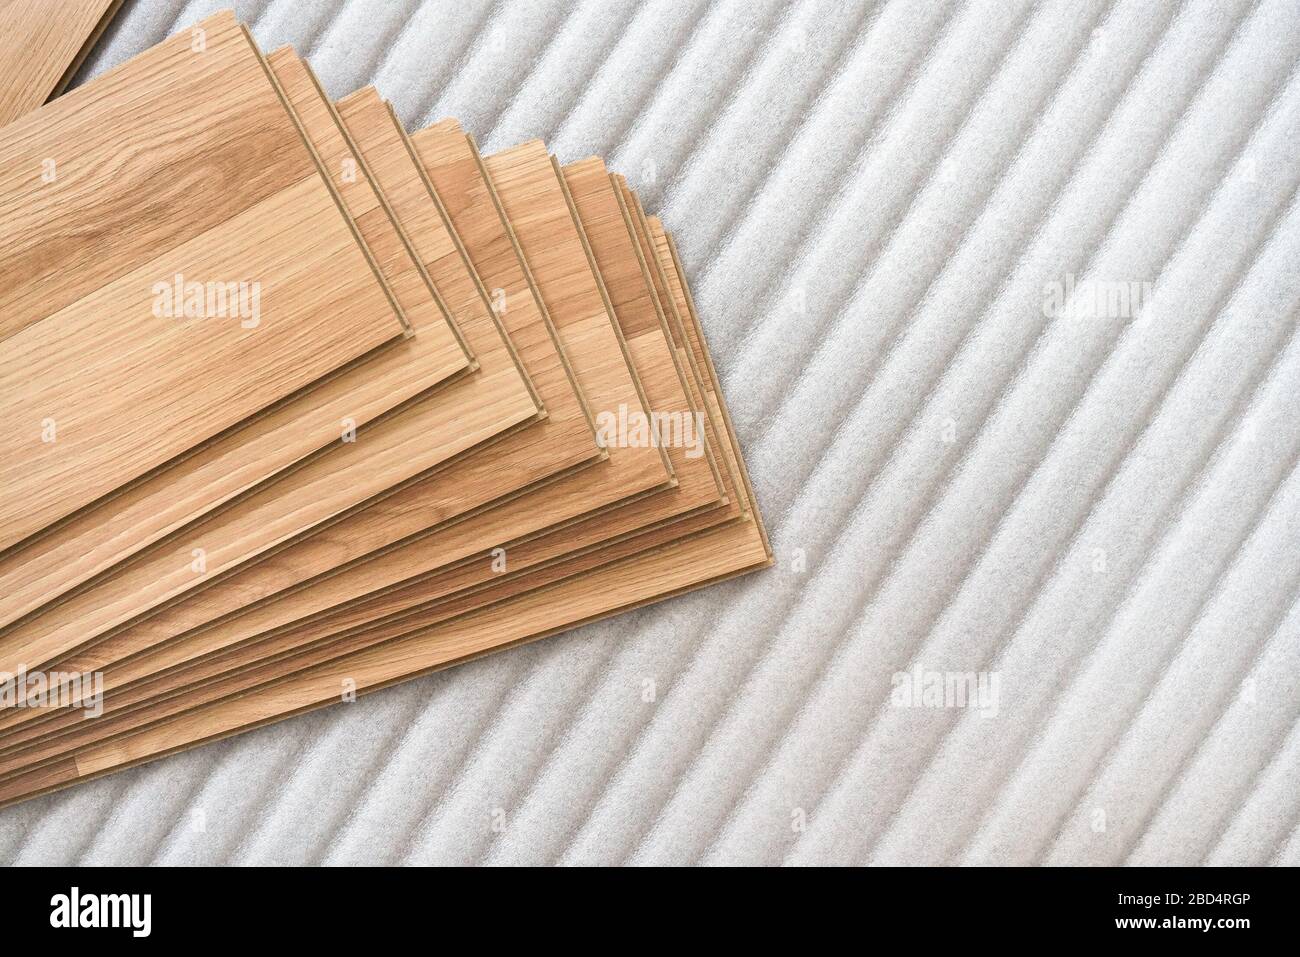 Installation d'un plancher laminé, détail sur des tuiles en bois disposées sur une couche de base en mousse blanche Banque D'Images